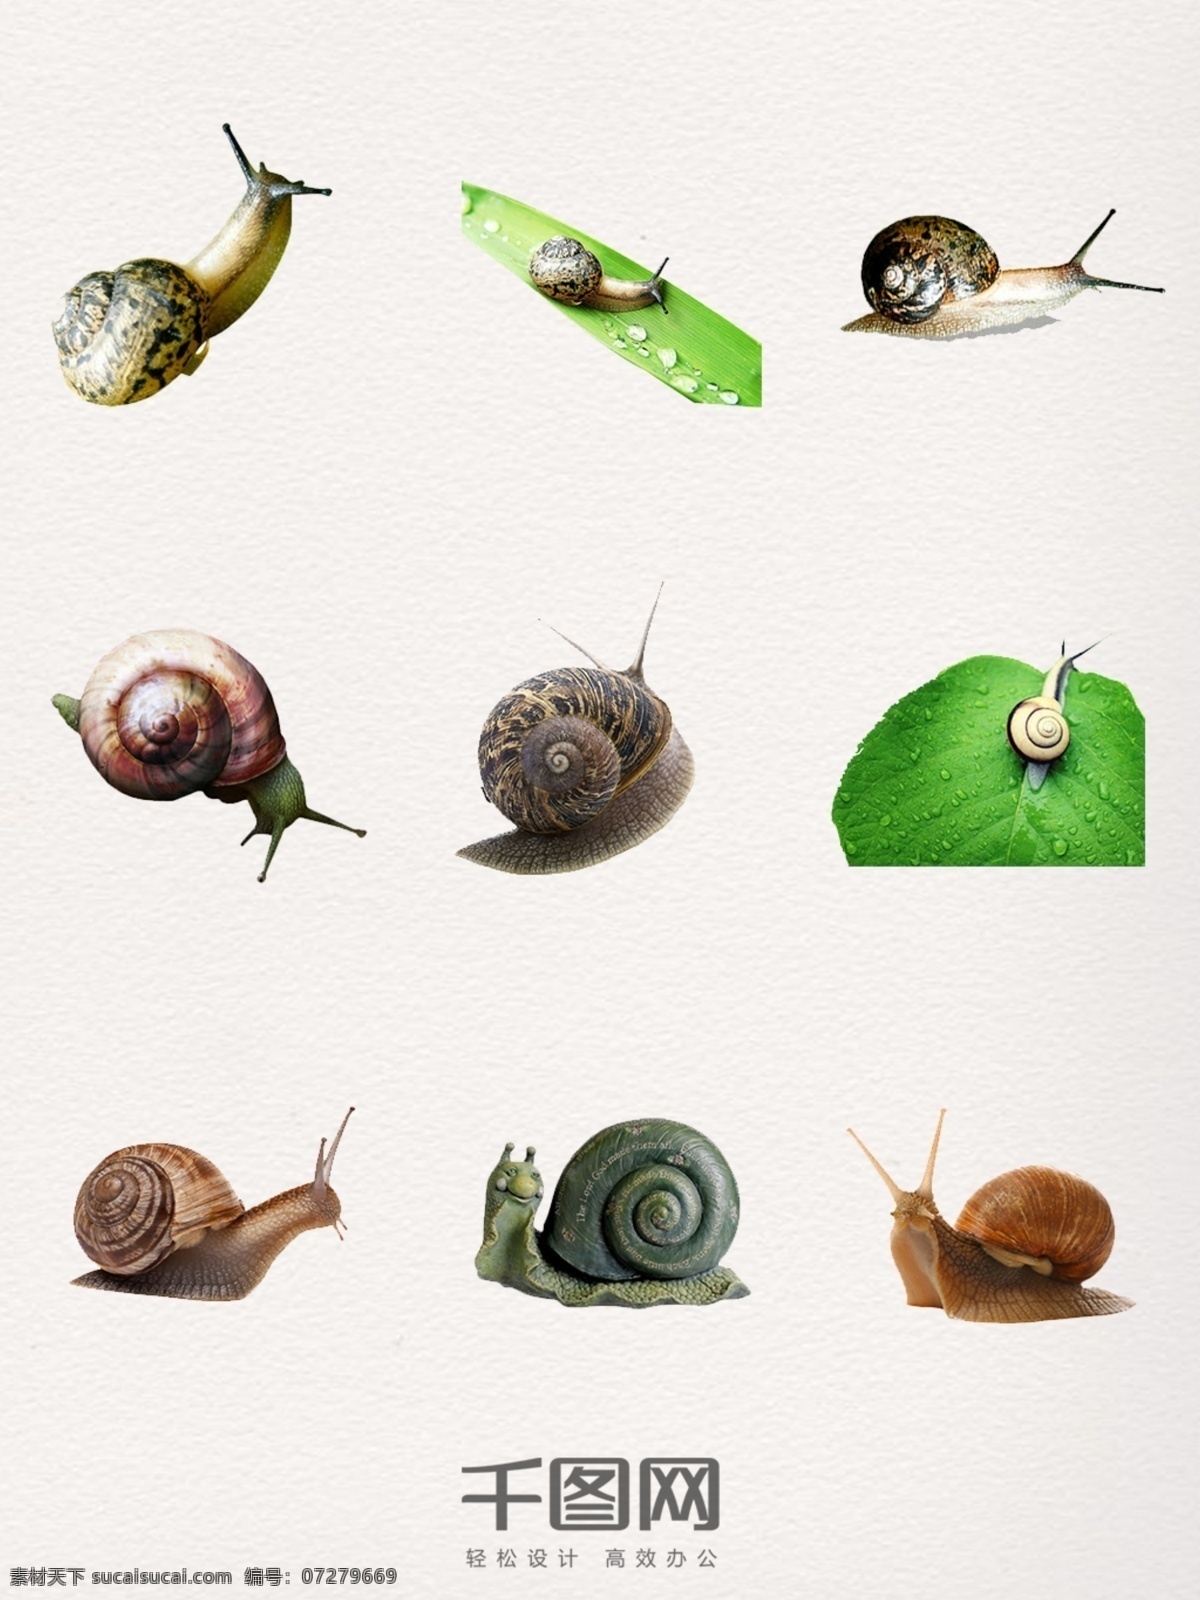 蜗牛 装饰 图案 元素 蜗牛装饰 蜗牛图案 蜗牛设计 蜗牛元素 蜗牛素材 蜗牛照片 蜗牛图片